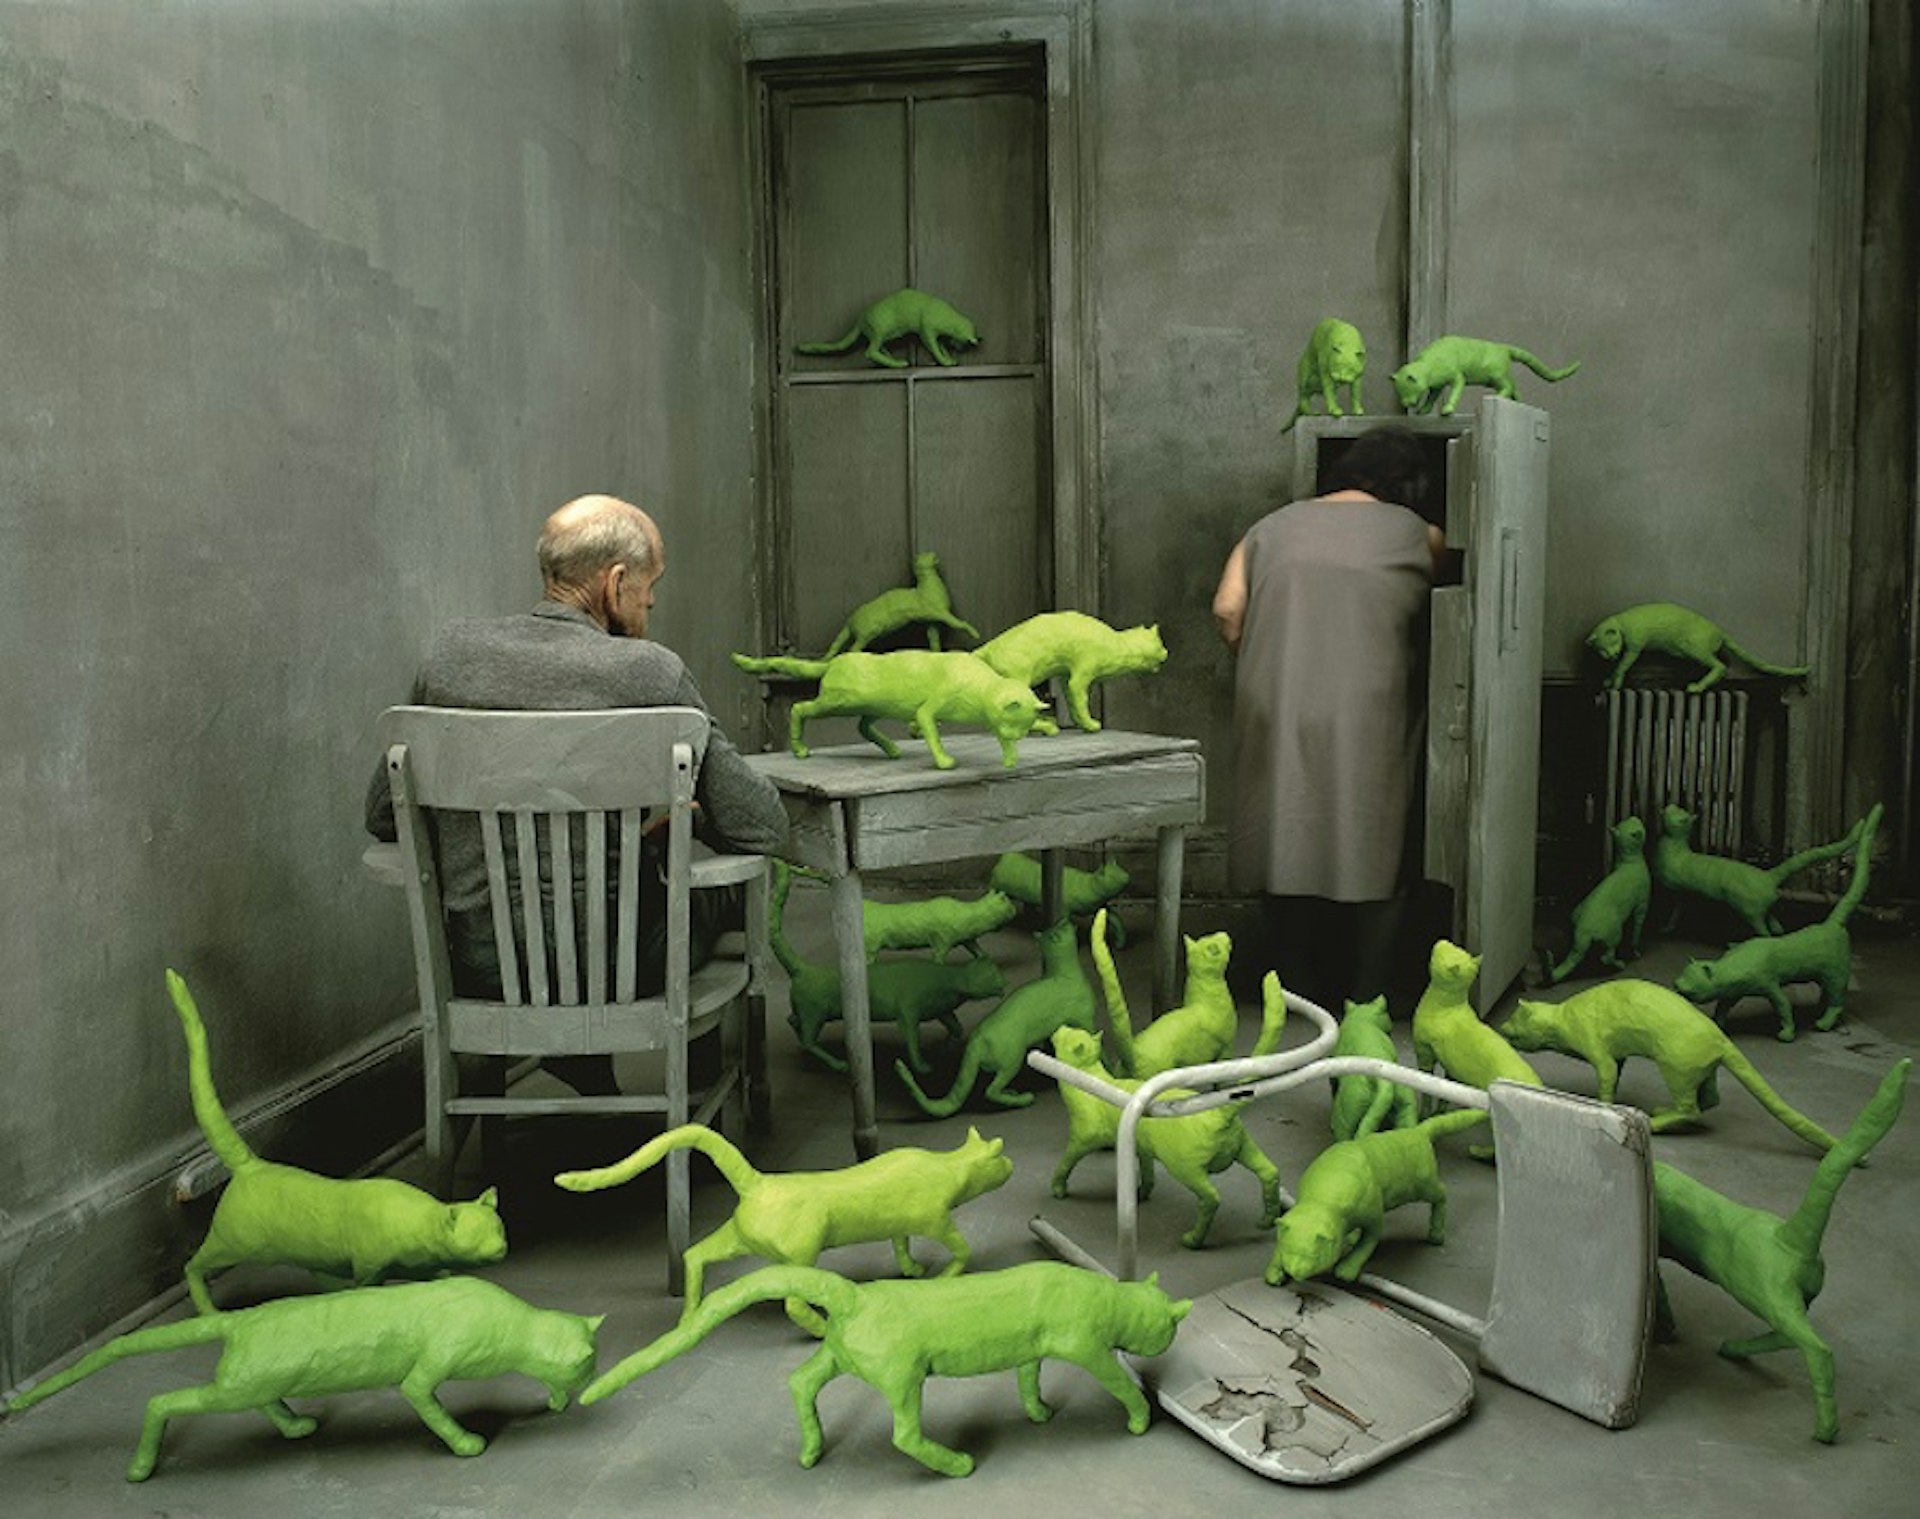 Radioactive Cats by Sandy Skoglund, 1980 © Sandy Skoglund